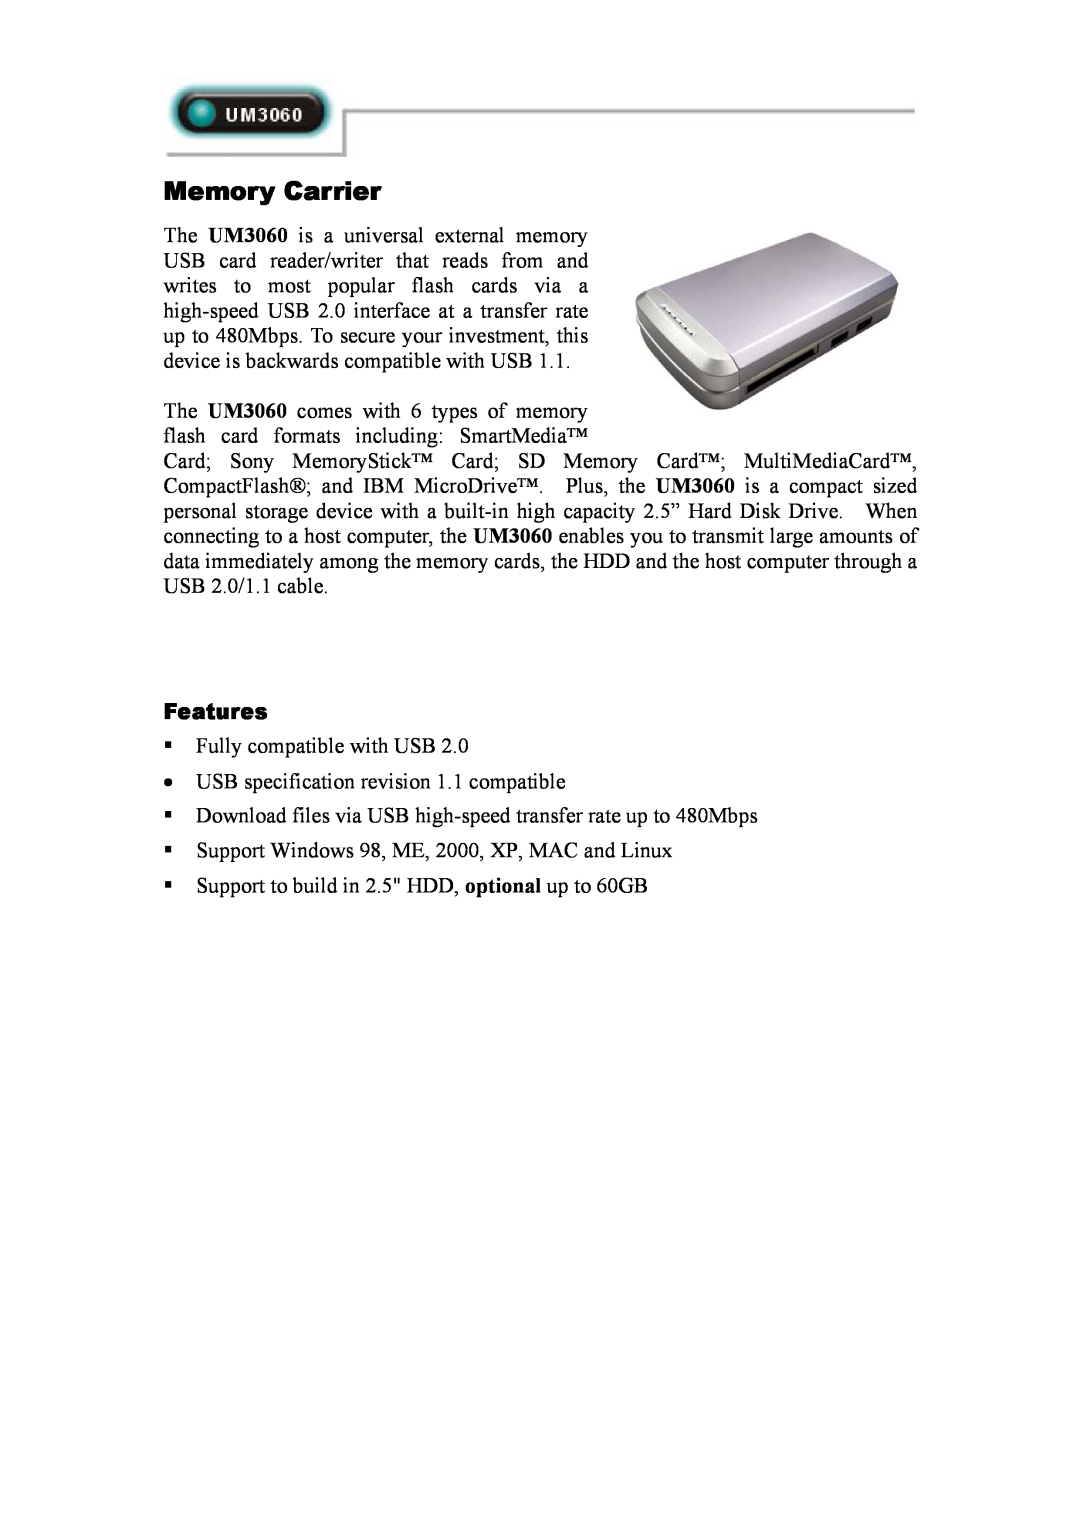 Abocom UM3060 manual Features, Memory Carrier 